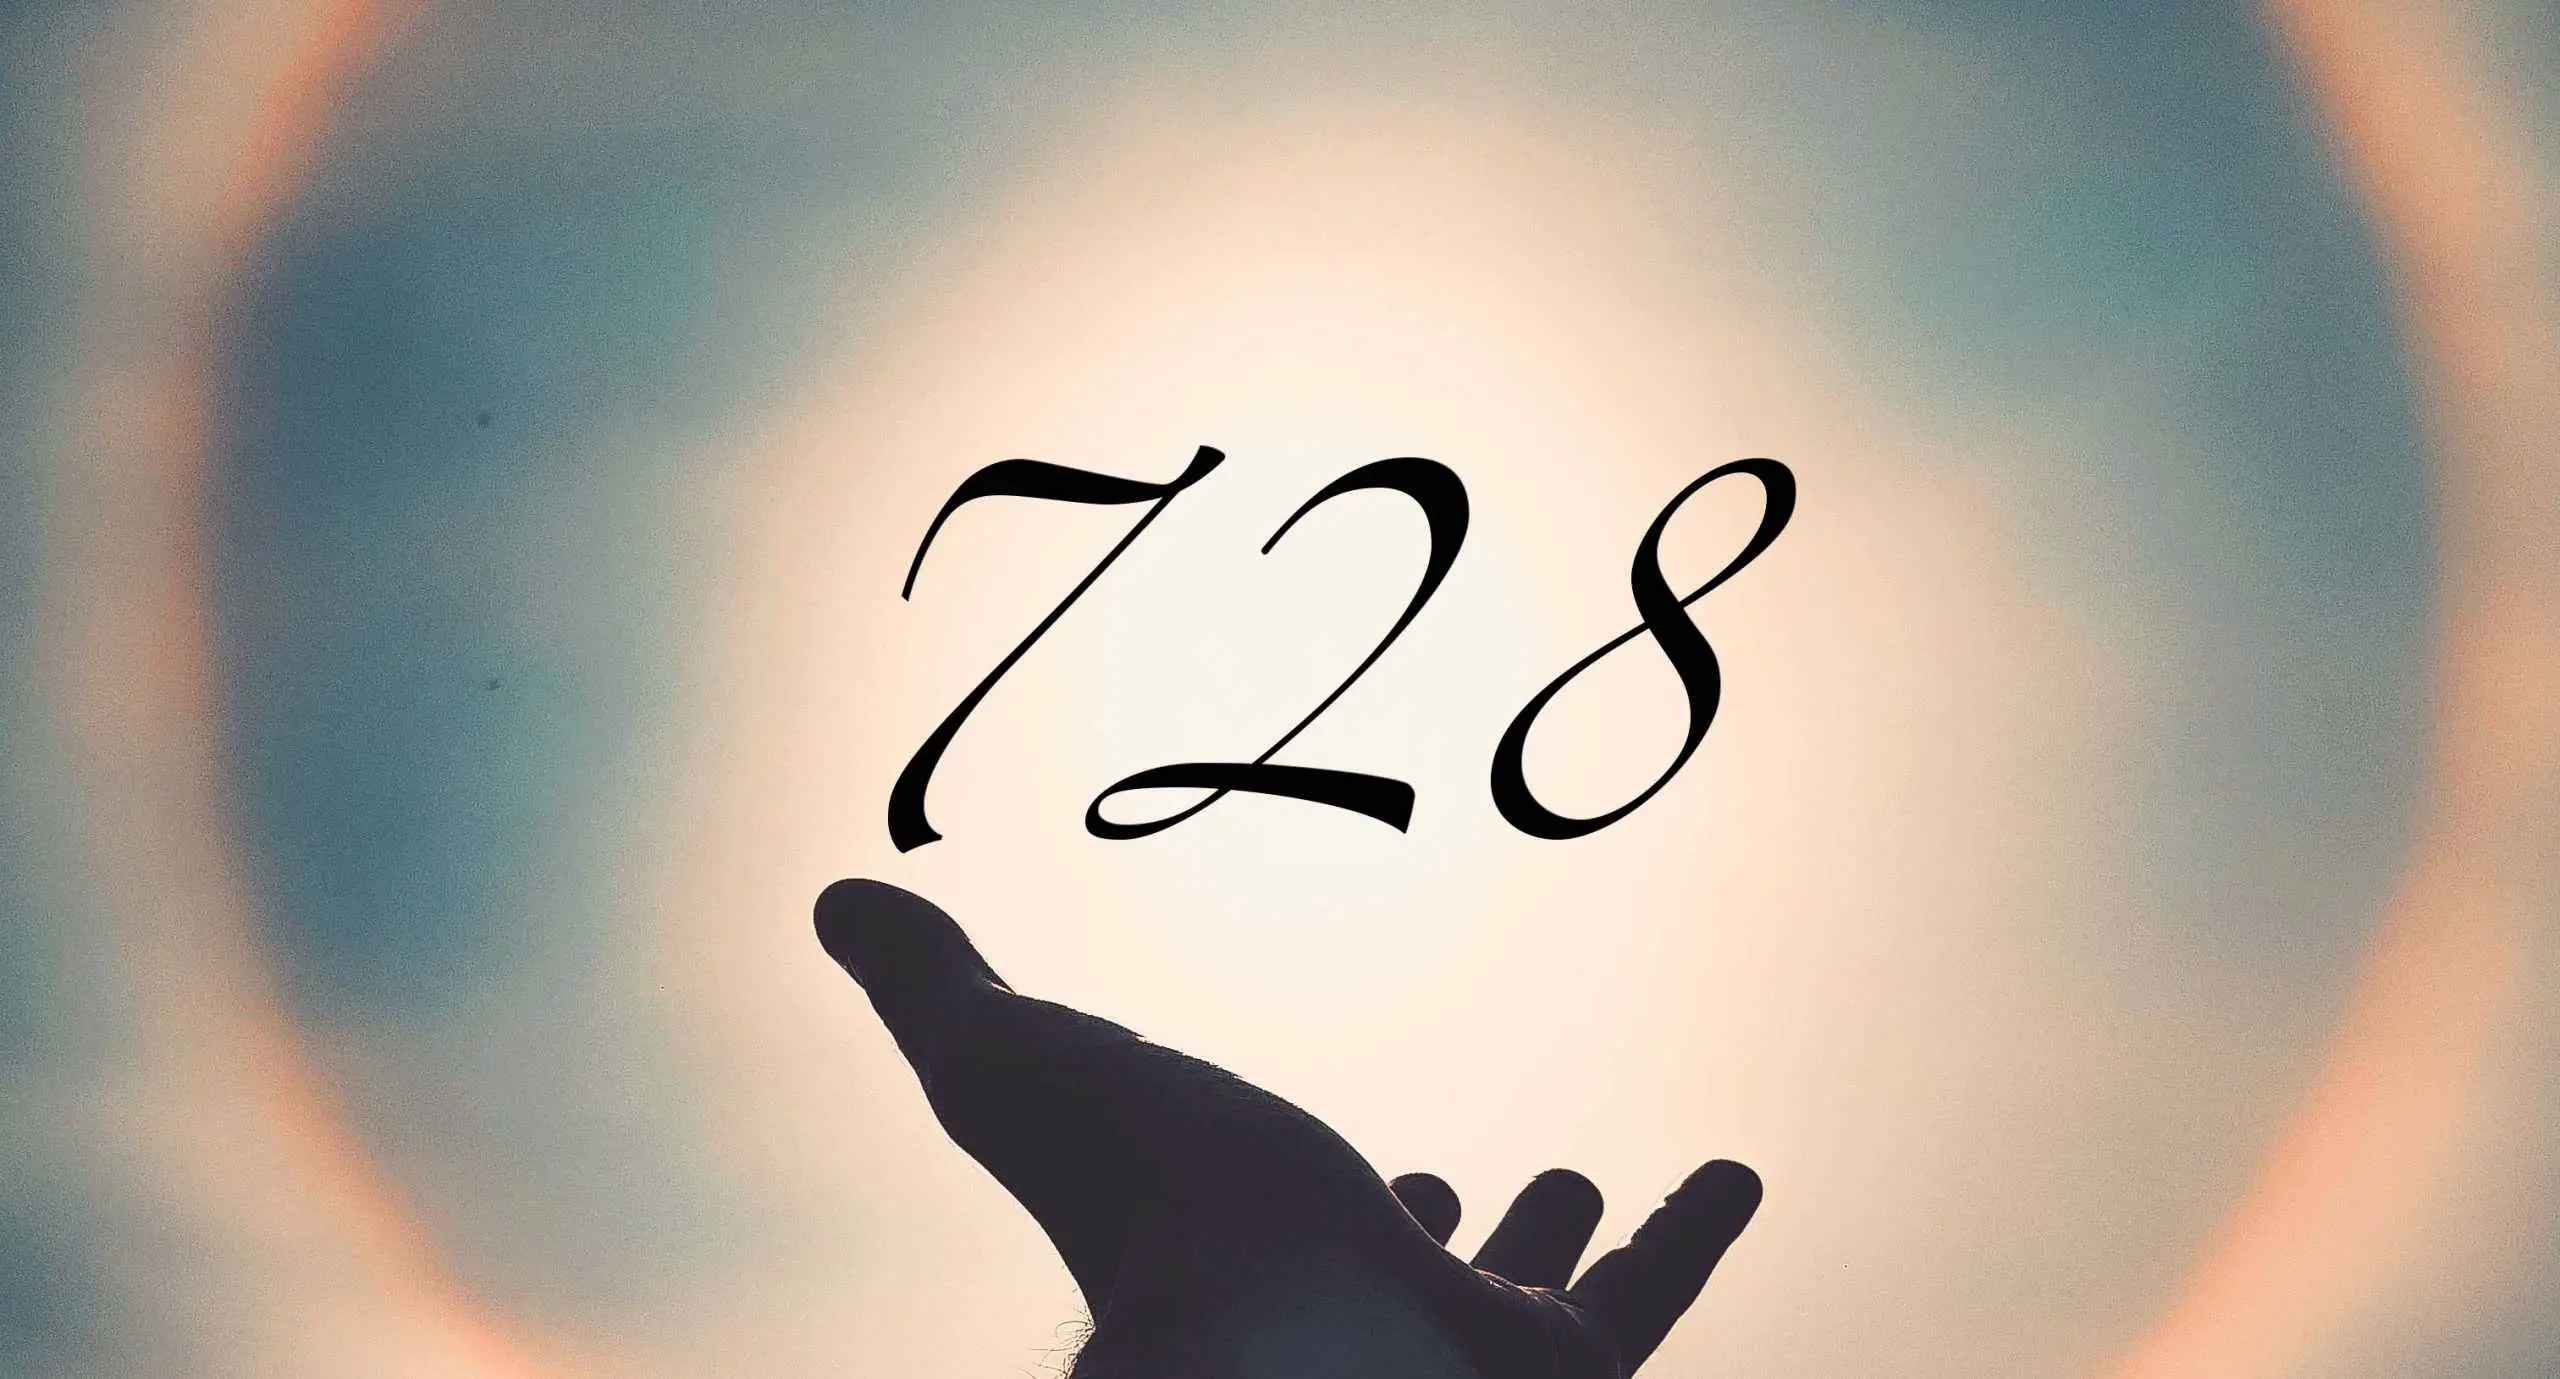 Signification du nombre 728